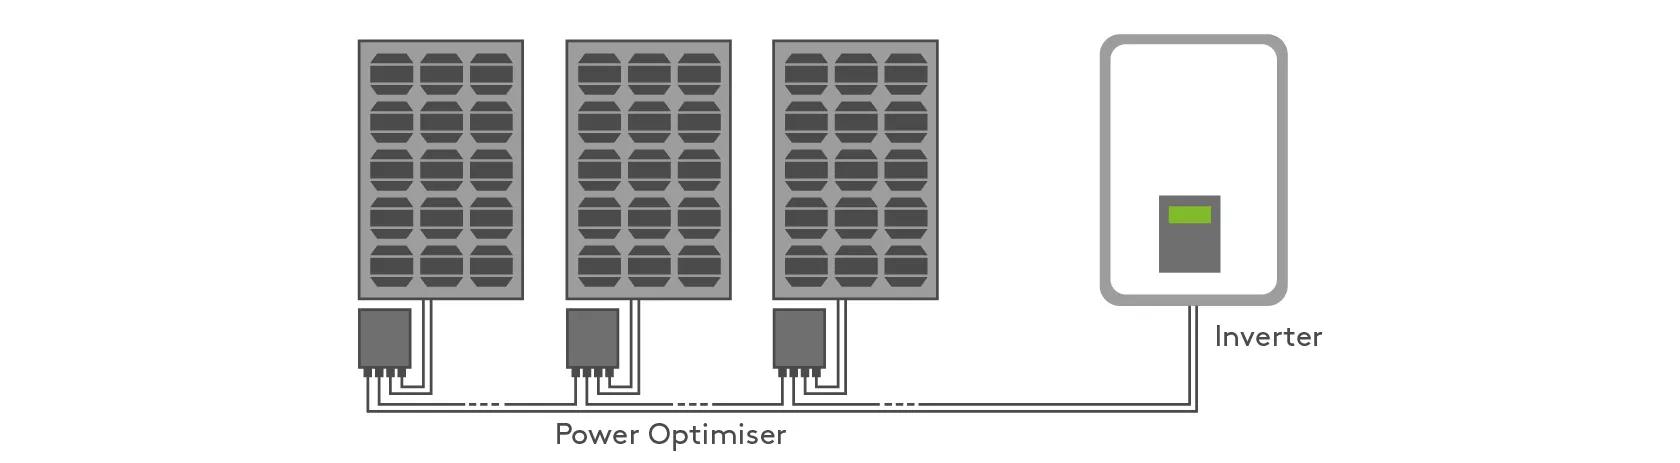 power optimiser and inverter diagram 